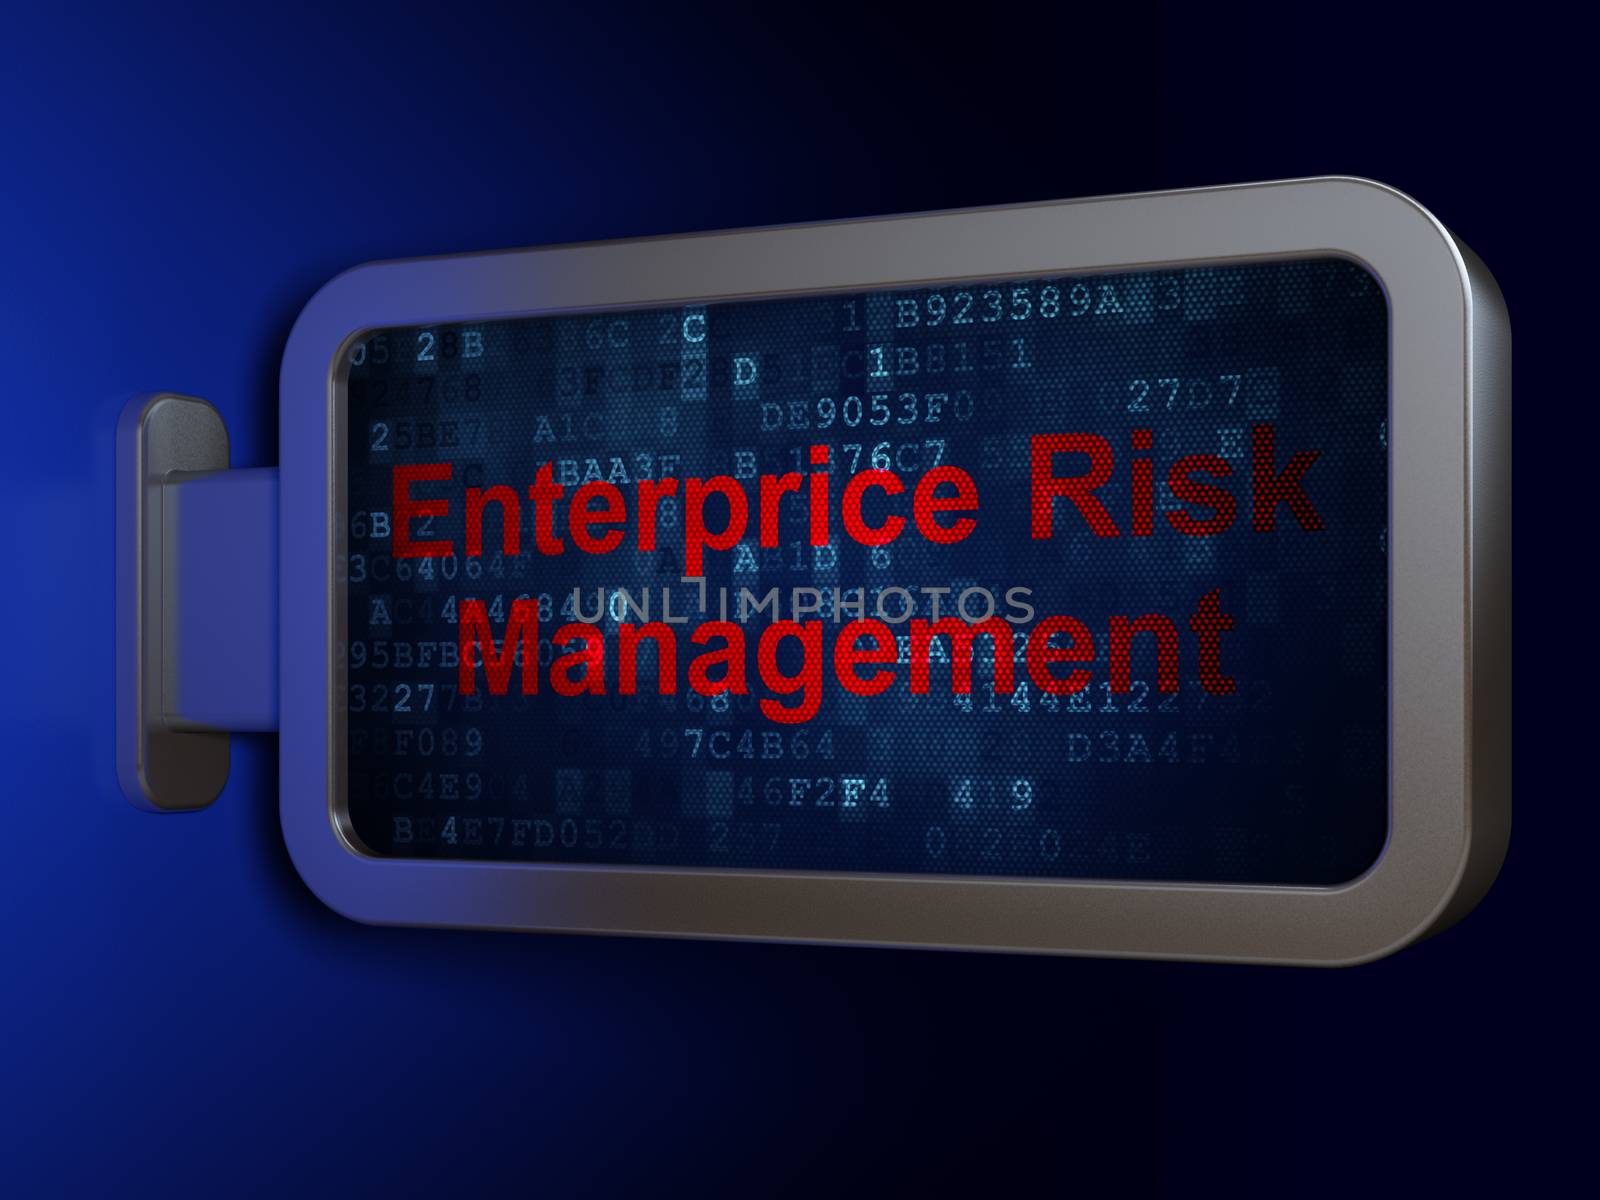 Business concept: Enterprice Risk Management on advertising billboard background, 3D rendering